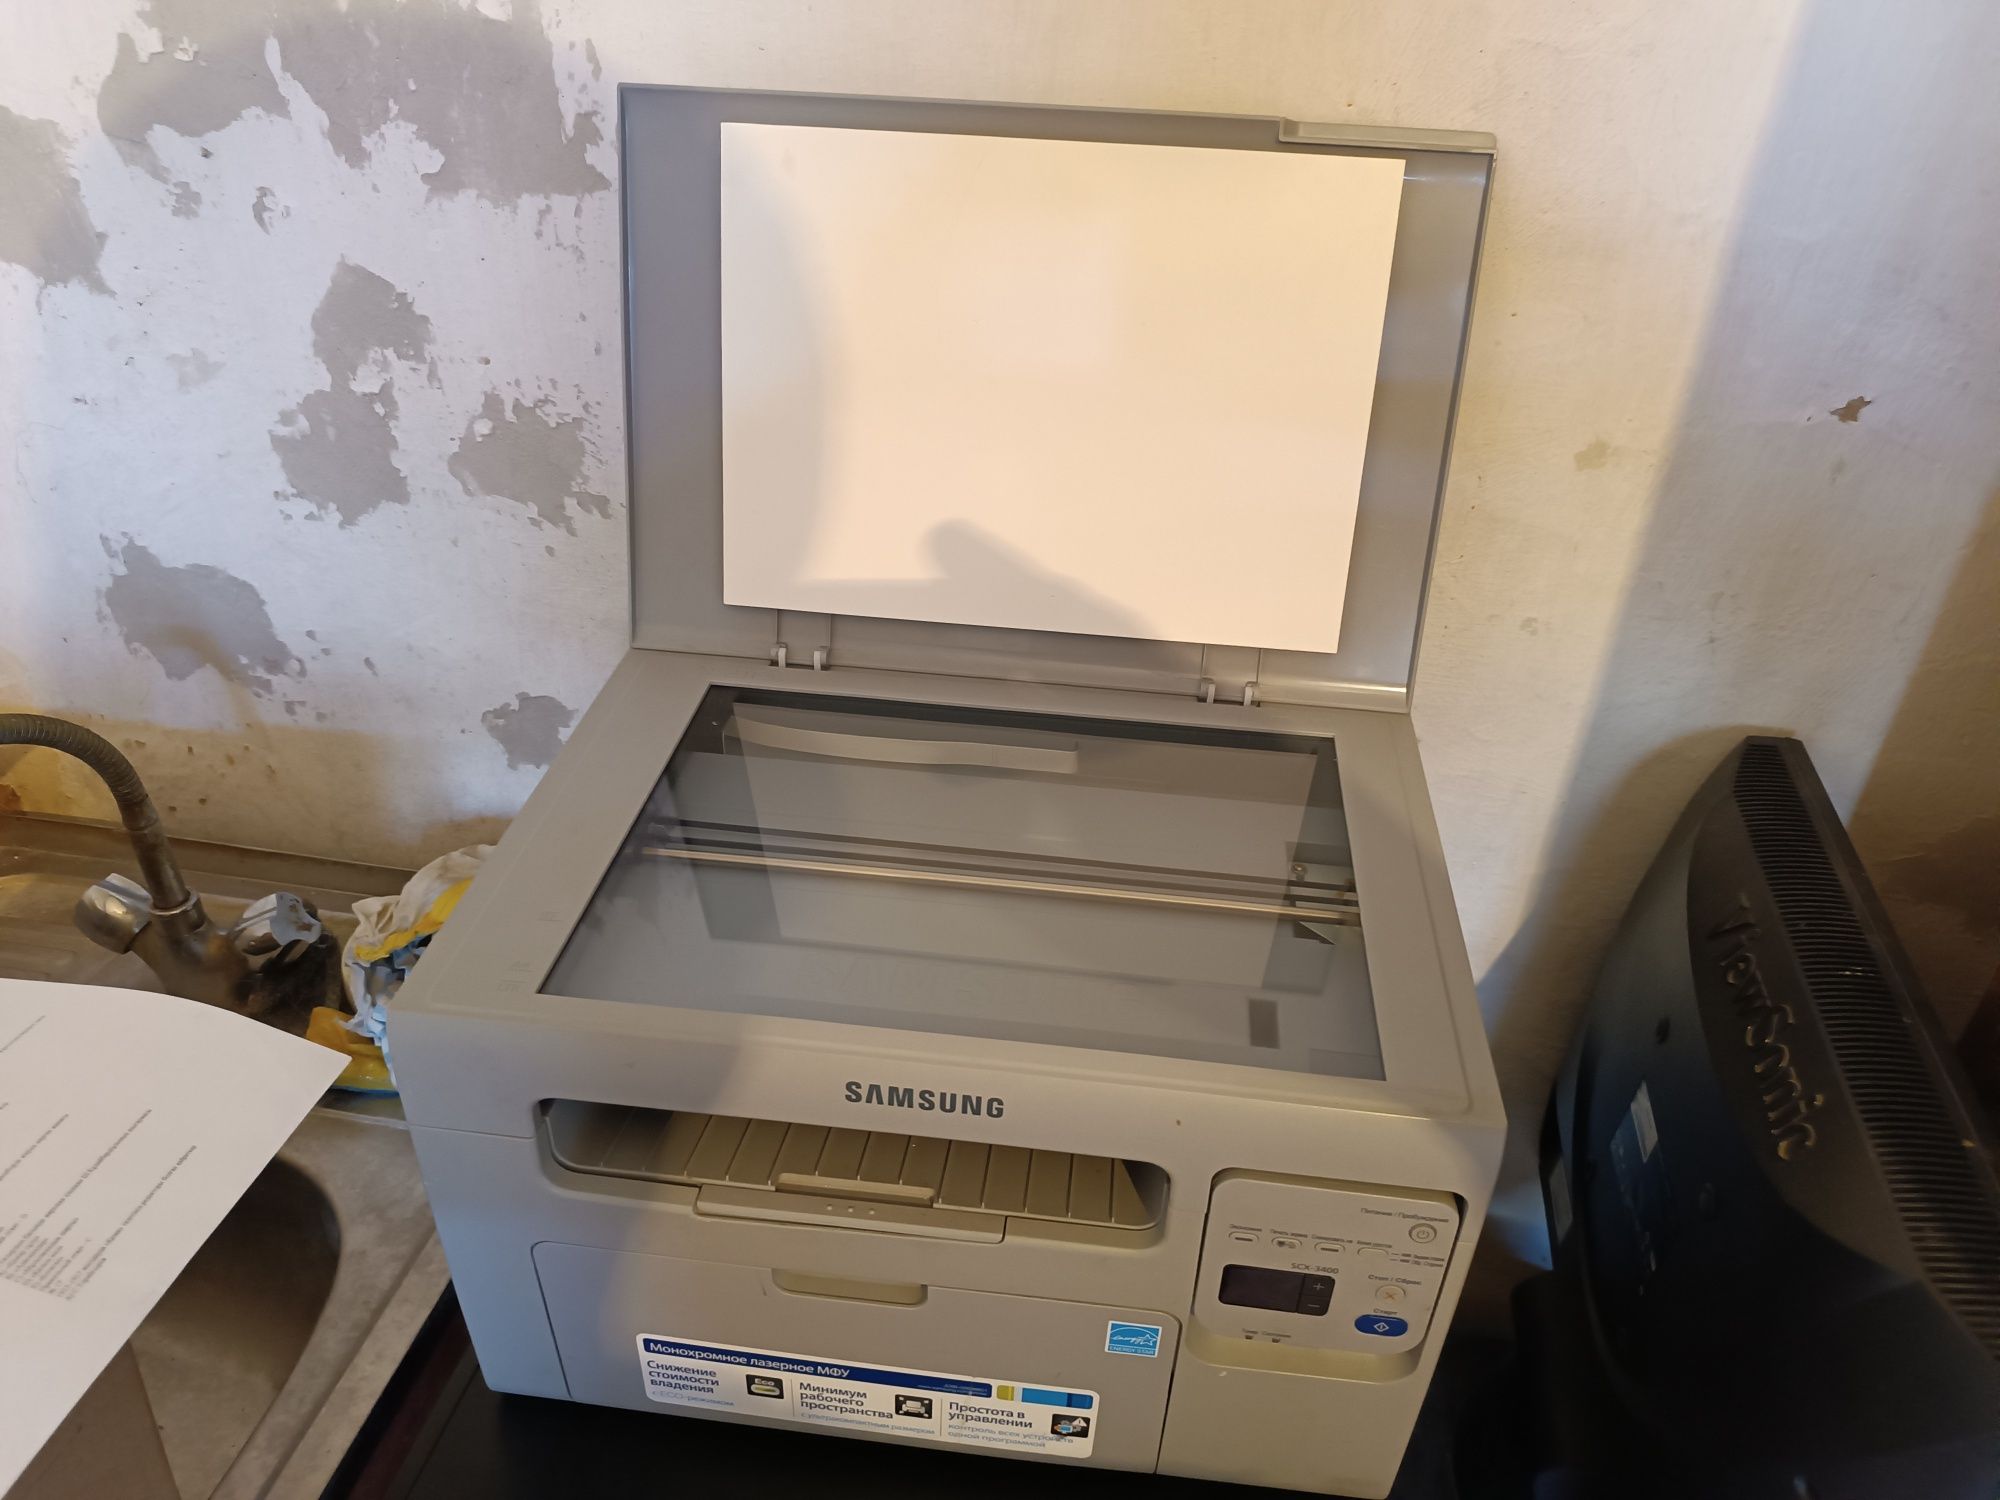 ксерокс принтер сканер мфу самсунг 3400 не рабочий